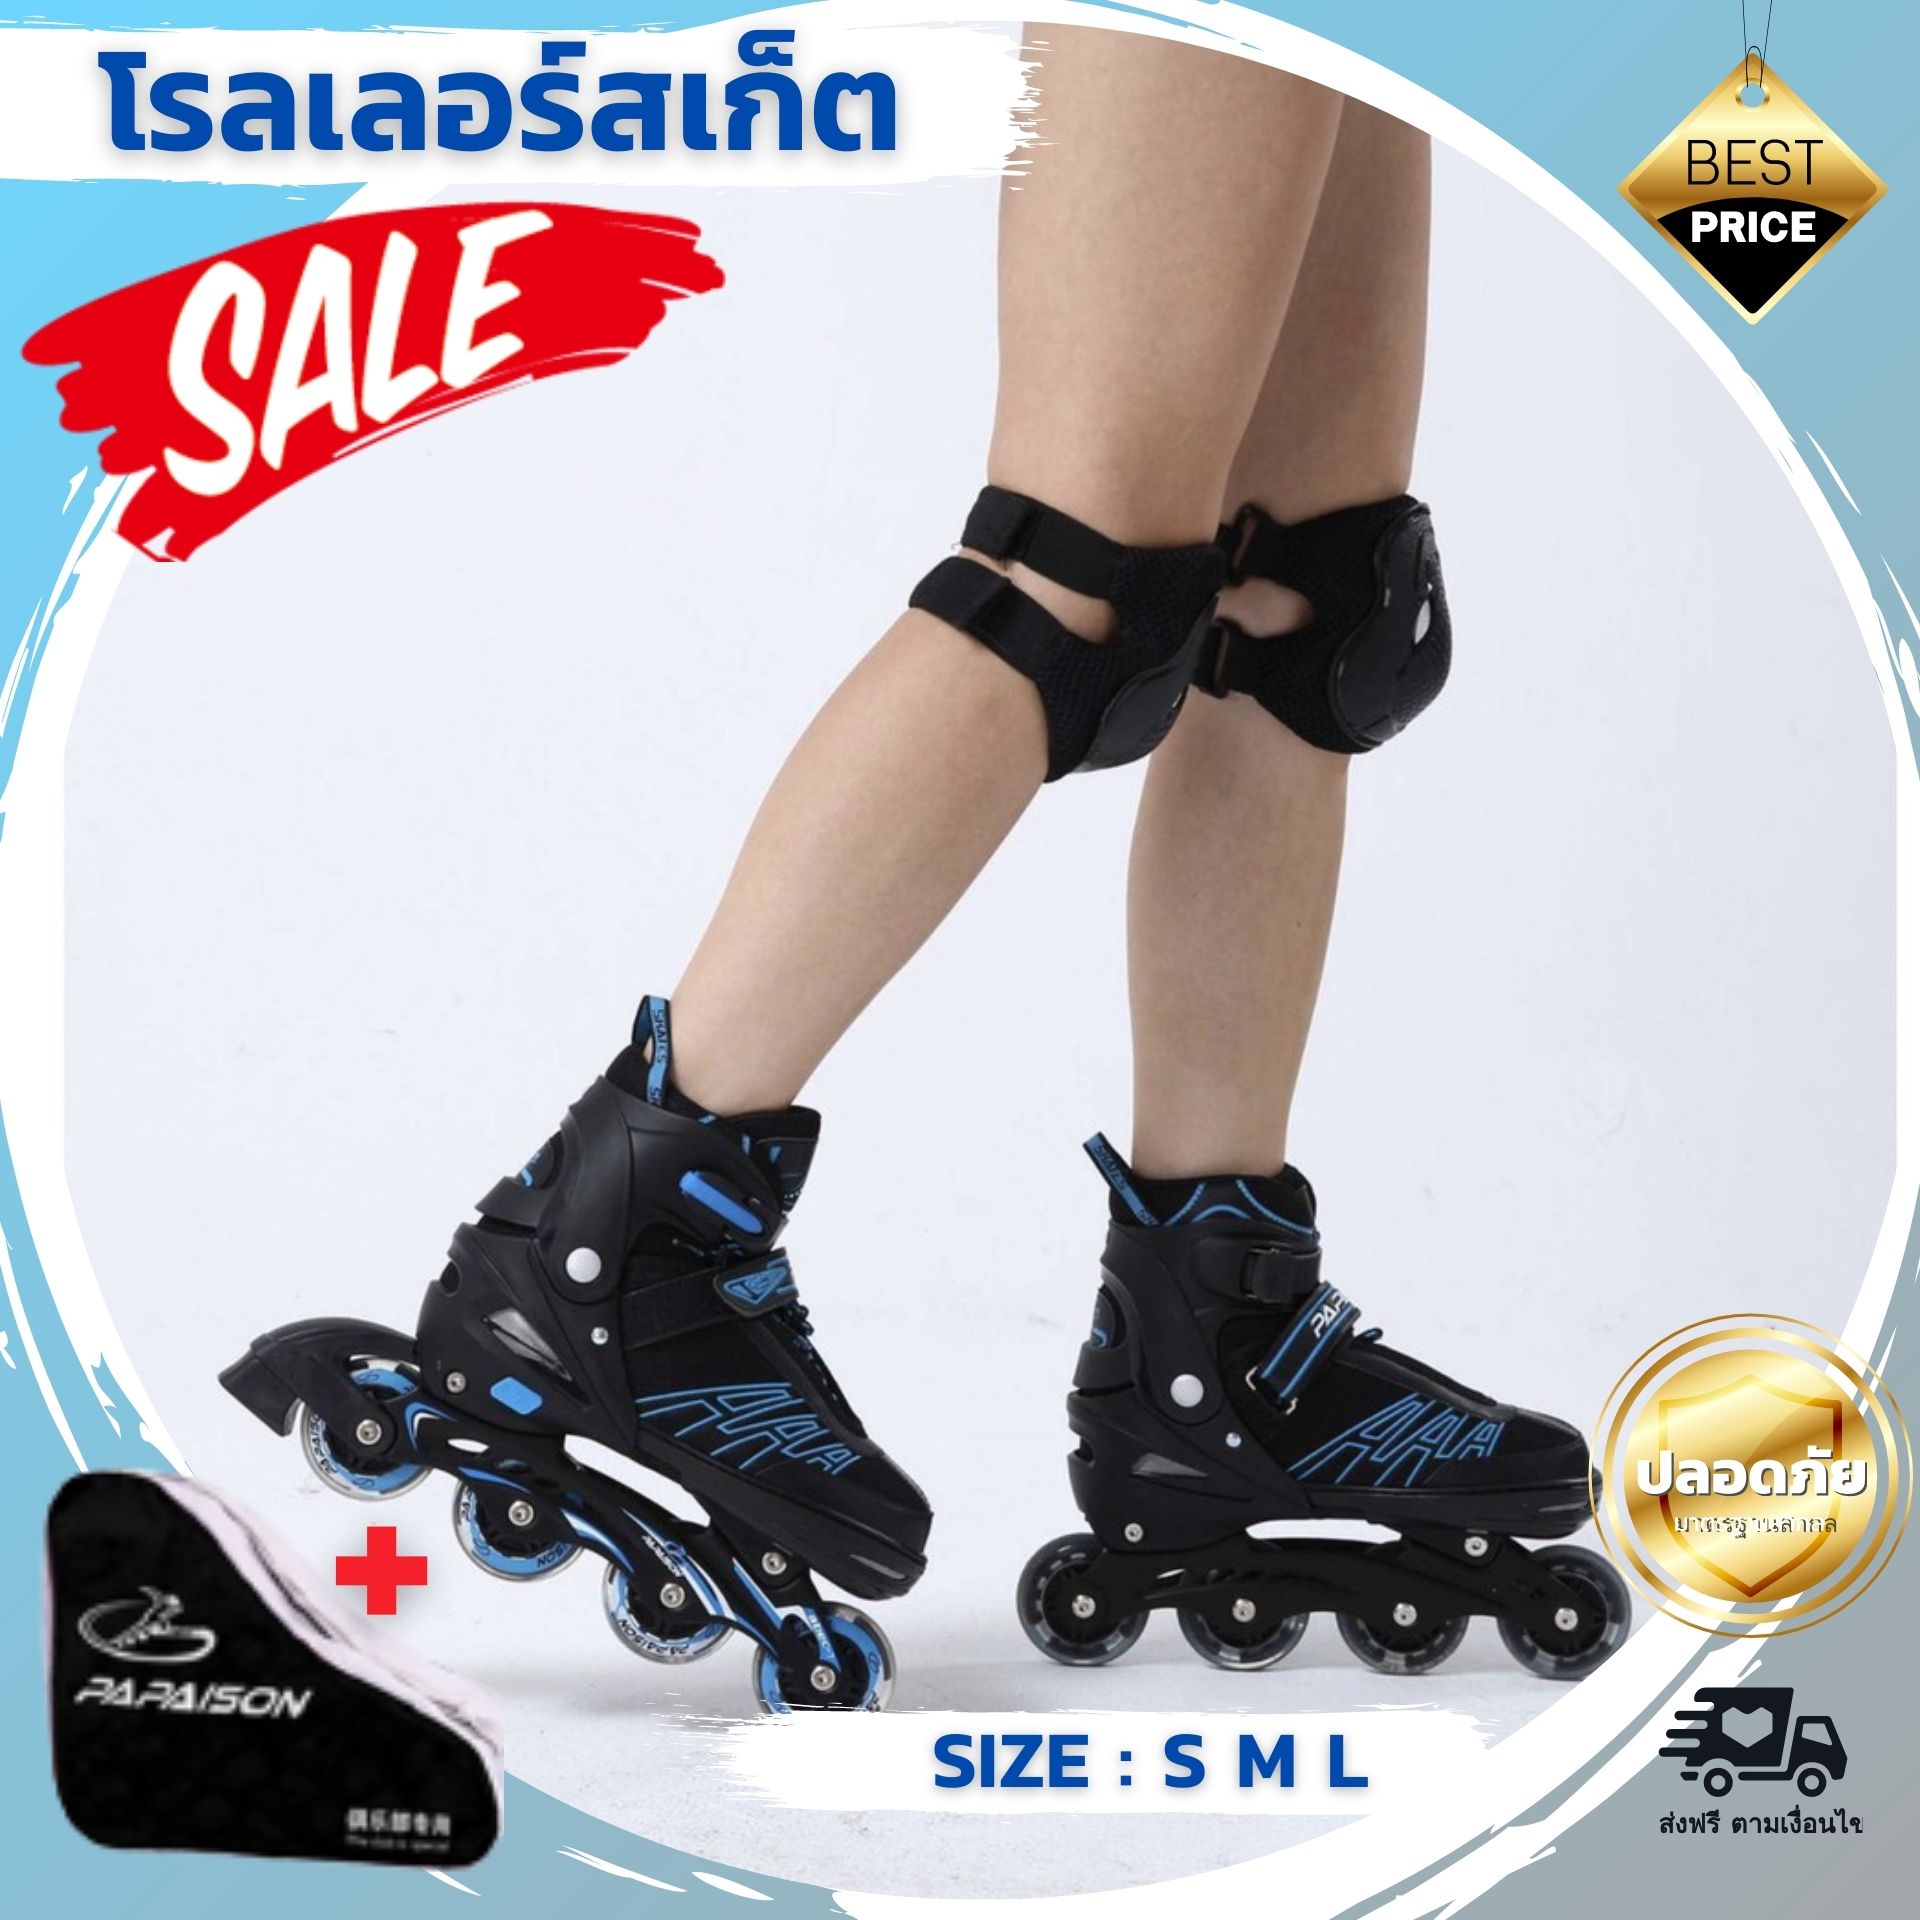 (ส่งไว) รองเท้าสเก็ต Roller Blade Skate มีให้เลือก 3 สี M/L/XL รับน้ำหนักสูงสุด 100 กก. แข็งแรงทนทาน รับประกันคุณภาพ โรลเลอร์เบลด รองเท้าสเก็ตบอร์ด